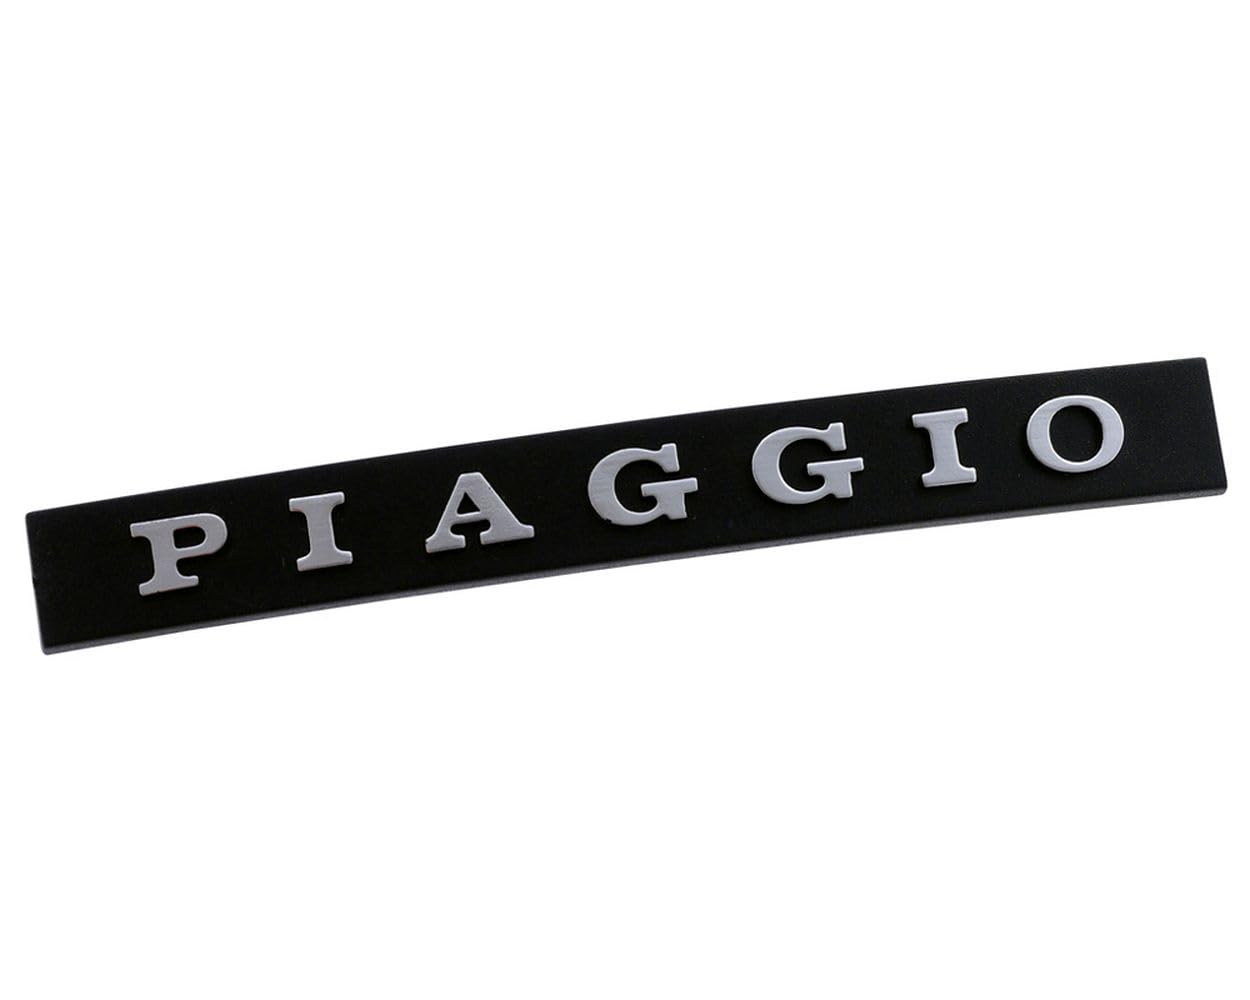 Schriftzug Emblem für Kaskade Piaggio schwarz/Silber, gesteckt von 2EXTREME